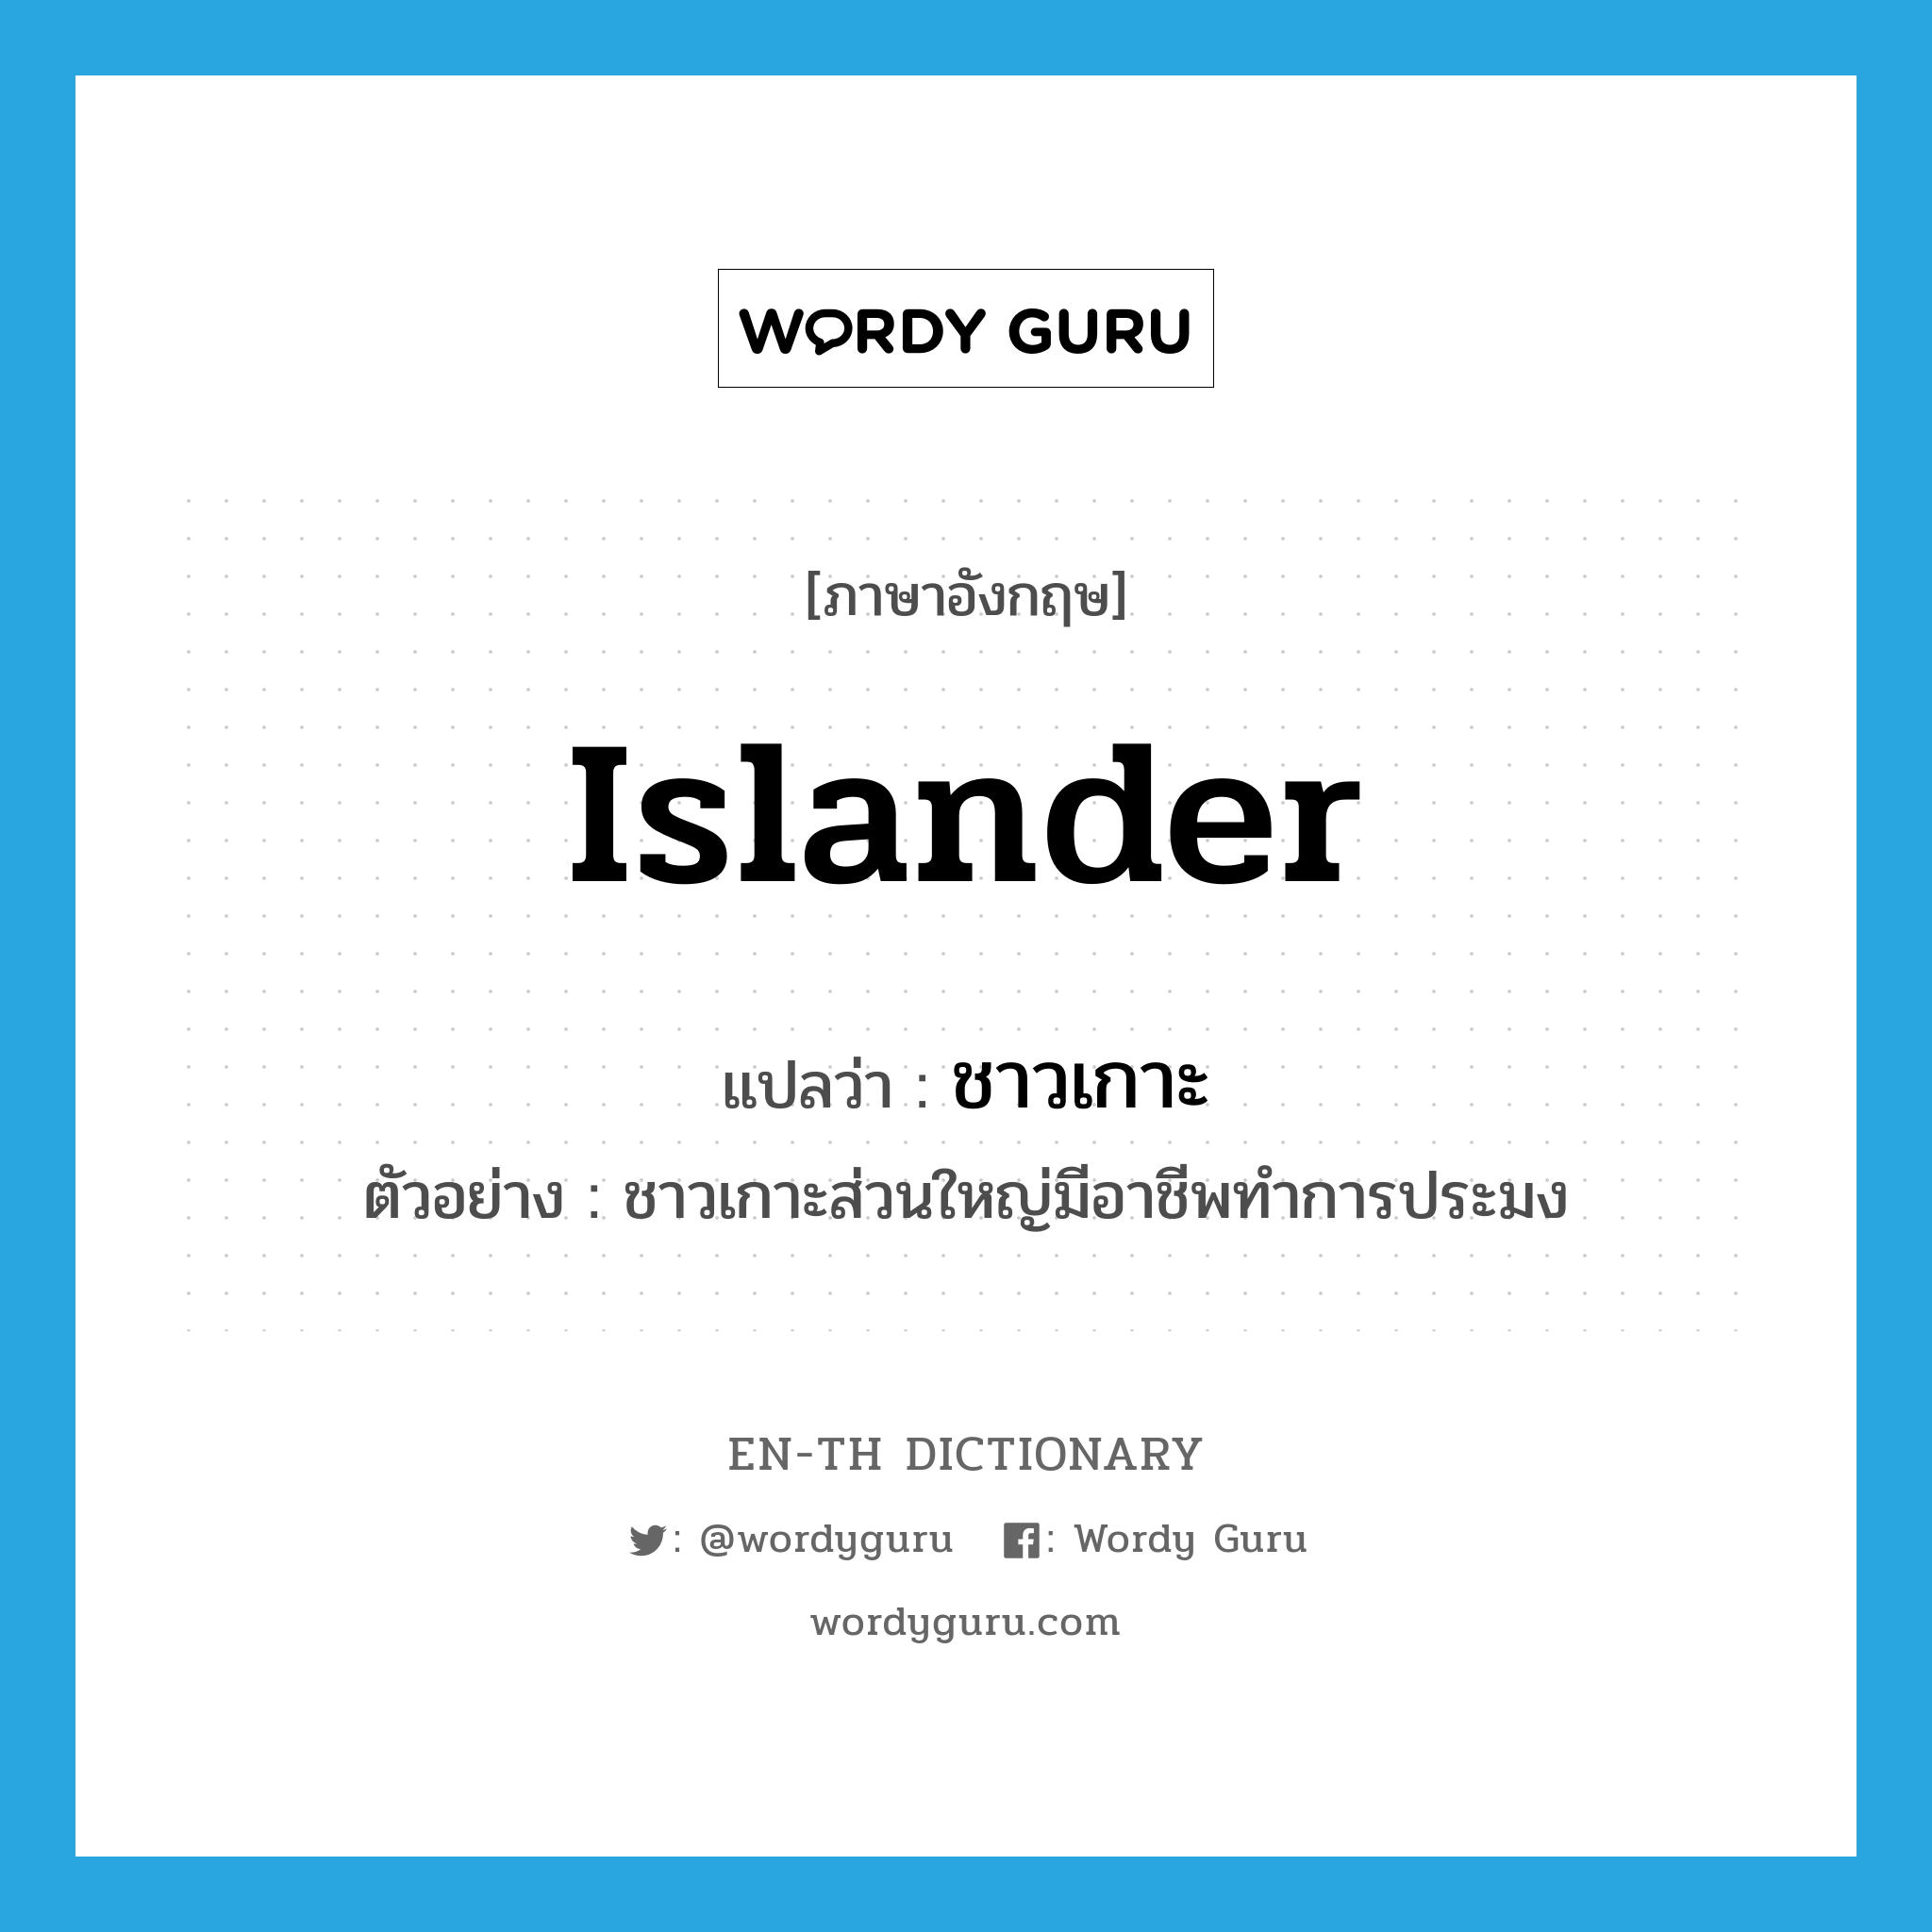 islander แปลว่า?, คำศัพท์ภาษาอังกฤษ islander แปลว่า ชาวเกาะ ประเภท N ตัวอย่าง ชาวเกาะส่วนใหญ่มีอาชีพทำการประมง หมวด N